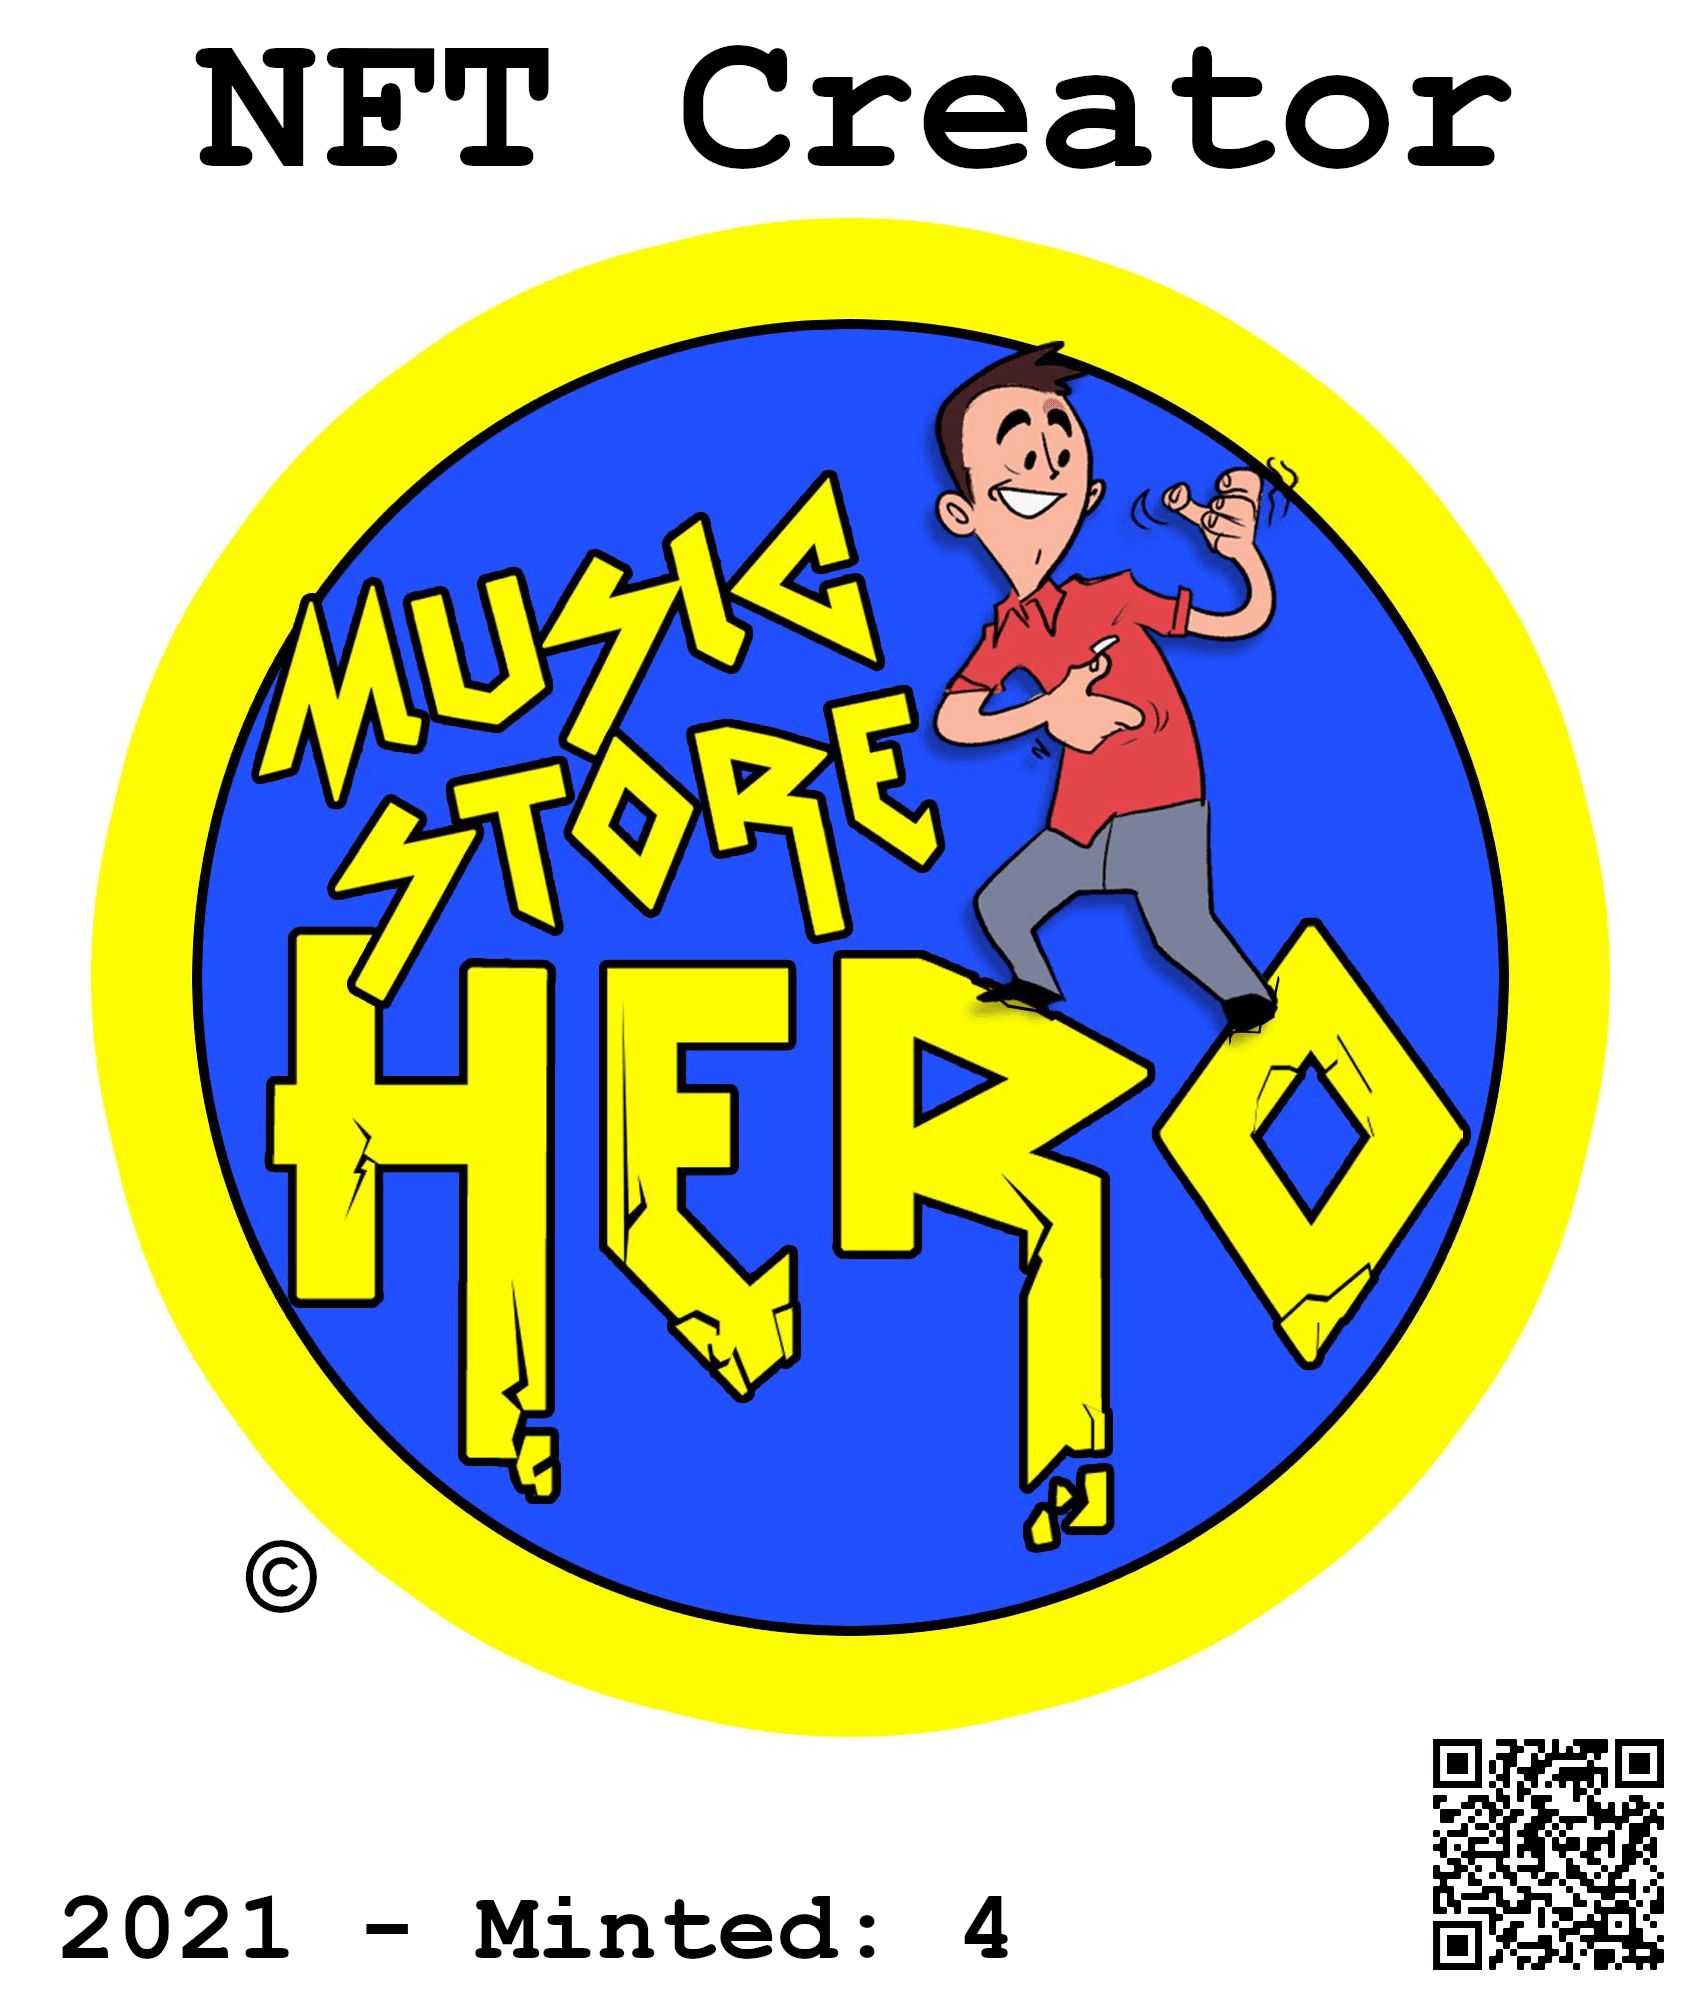 Music Store Hero - NFT Creator